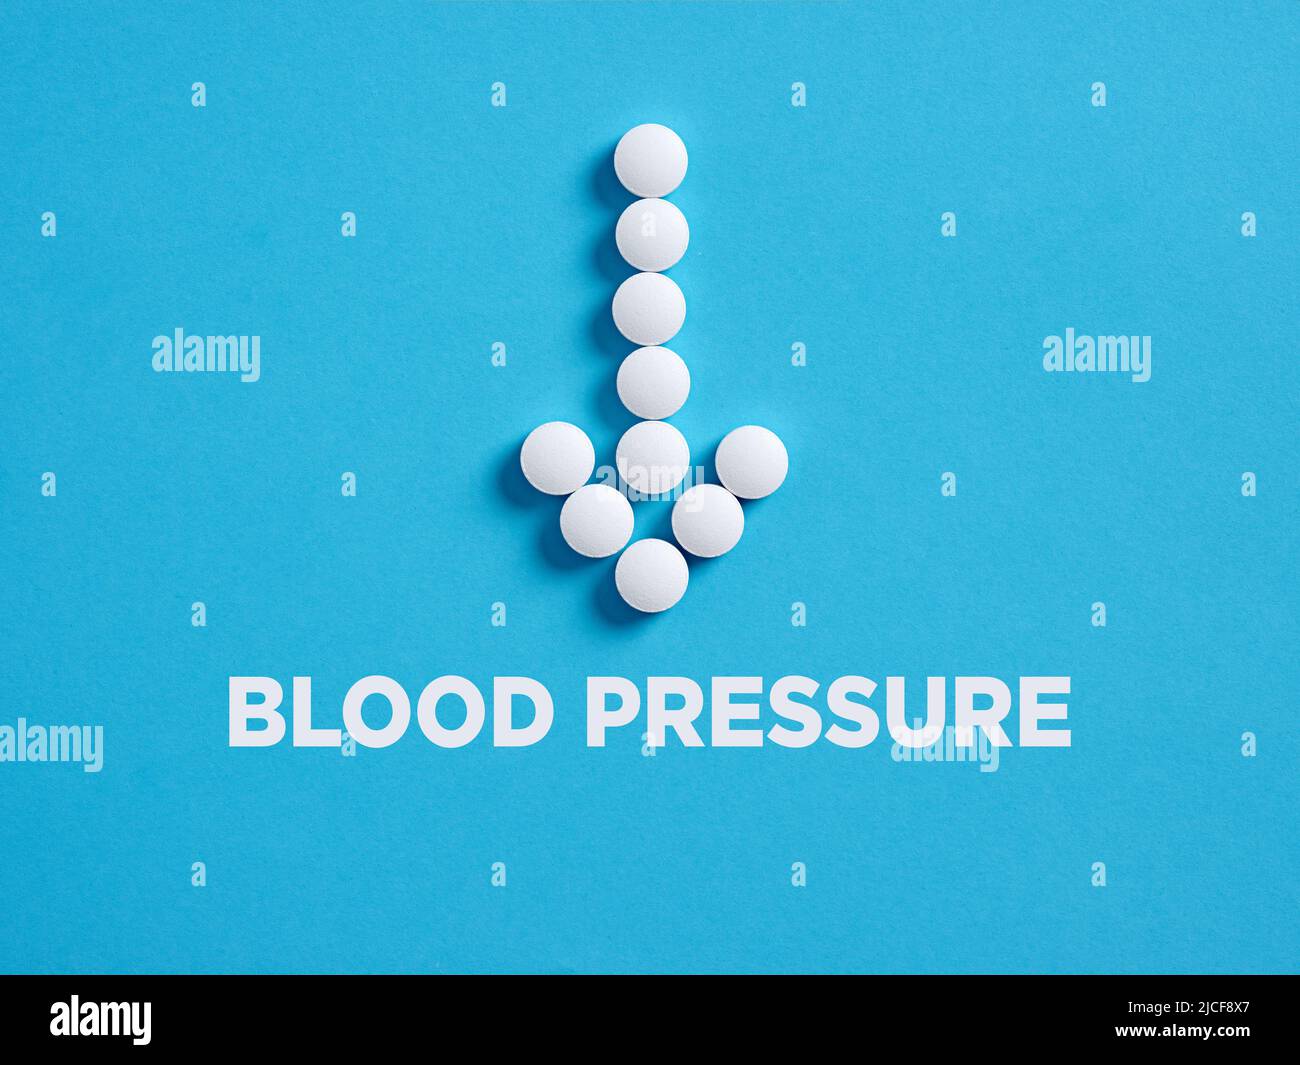 Runde weiße medizinische Pillen in Pfeilform, die auf das Wort Blutdruck zeigen. Behandlungskonzept zur Senkung des Blutdrucks. Stockfoto